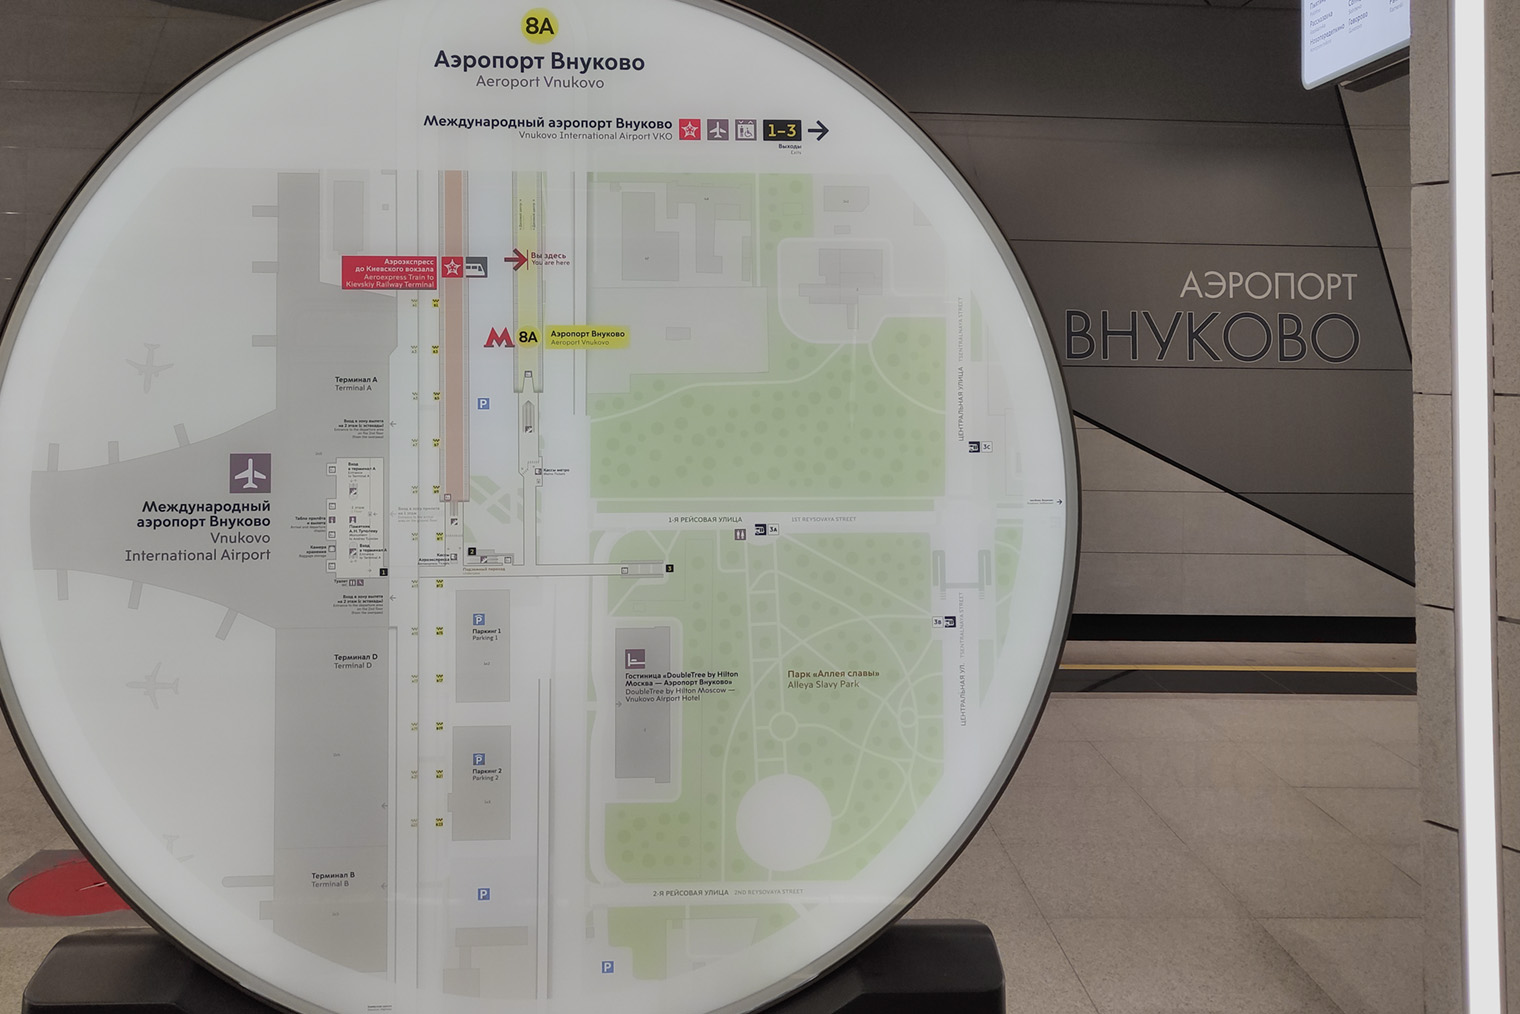 На станции «Аэропорт Внуково» размещены понятные навигационные стенды